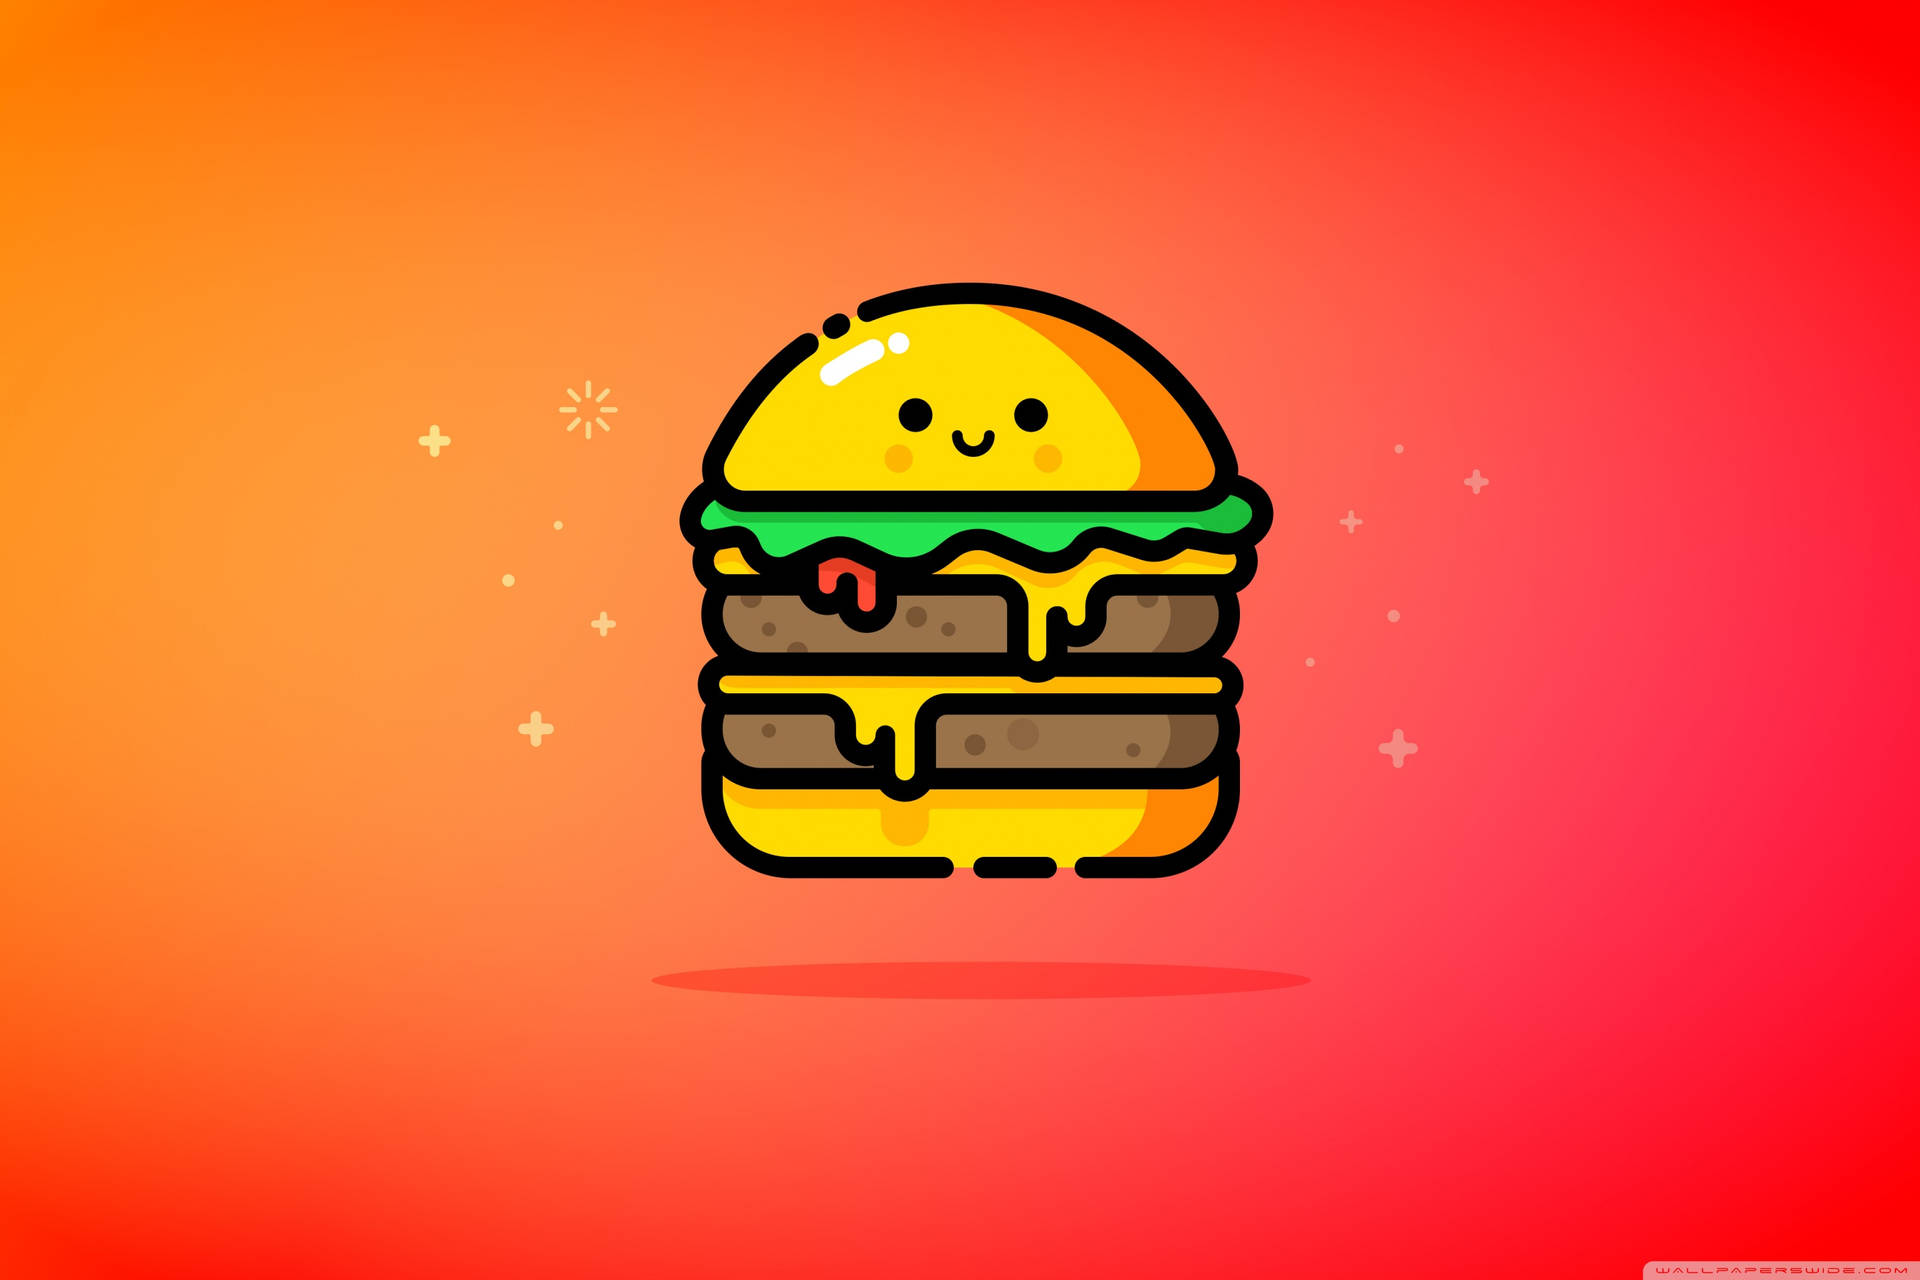 Cute Digital Drawing Of A Cheeseburger Wallpaper